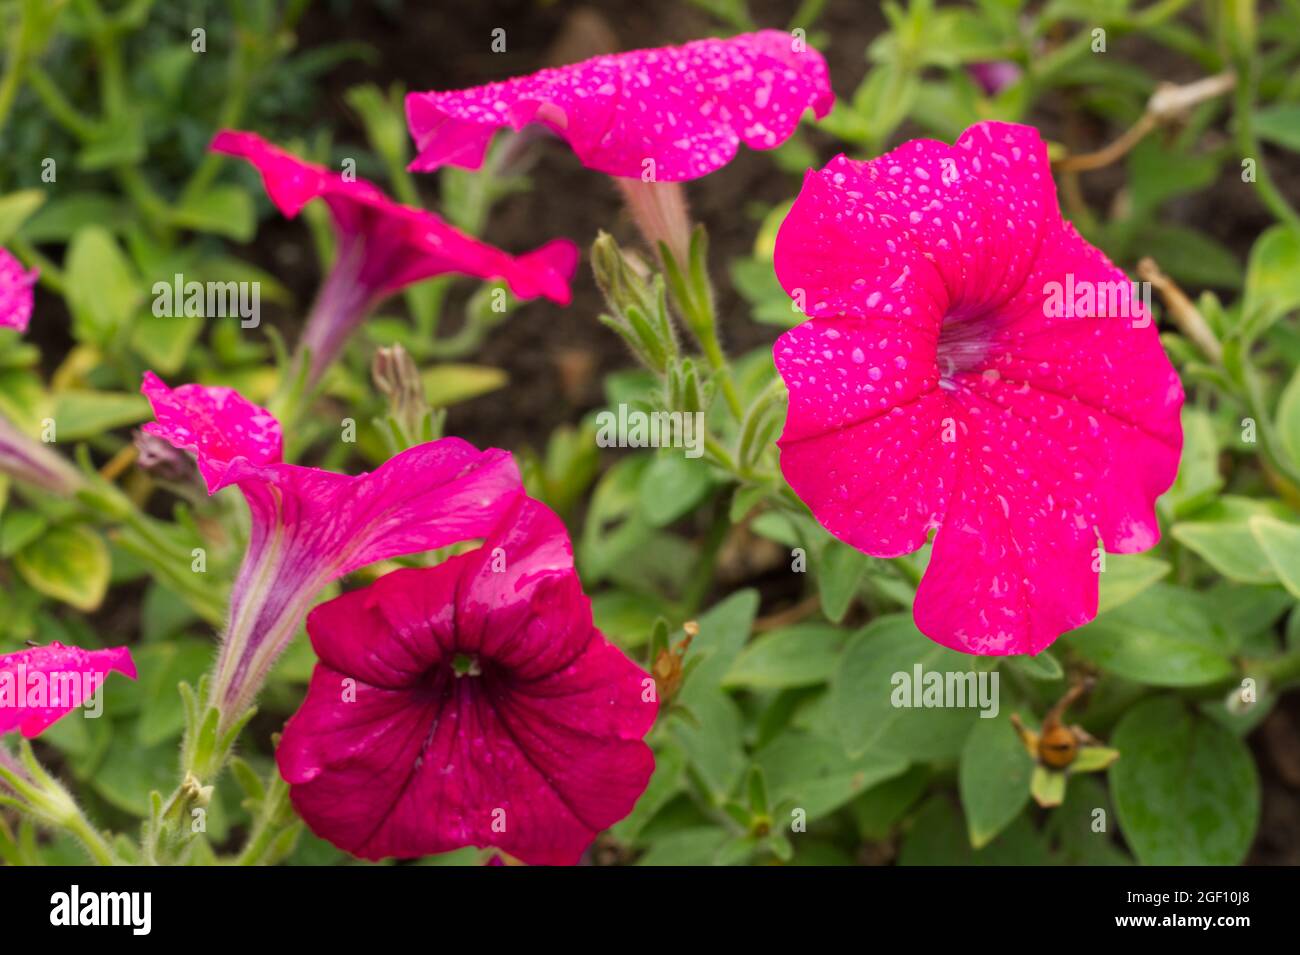 Pétunias rose profond avec gouttes de pluie en fleur, été Royaume-Uni Banque D'Images